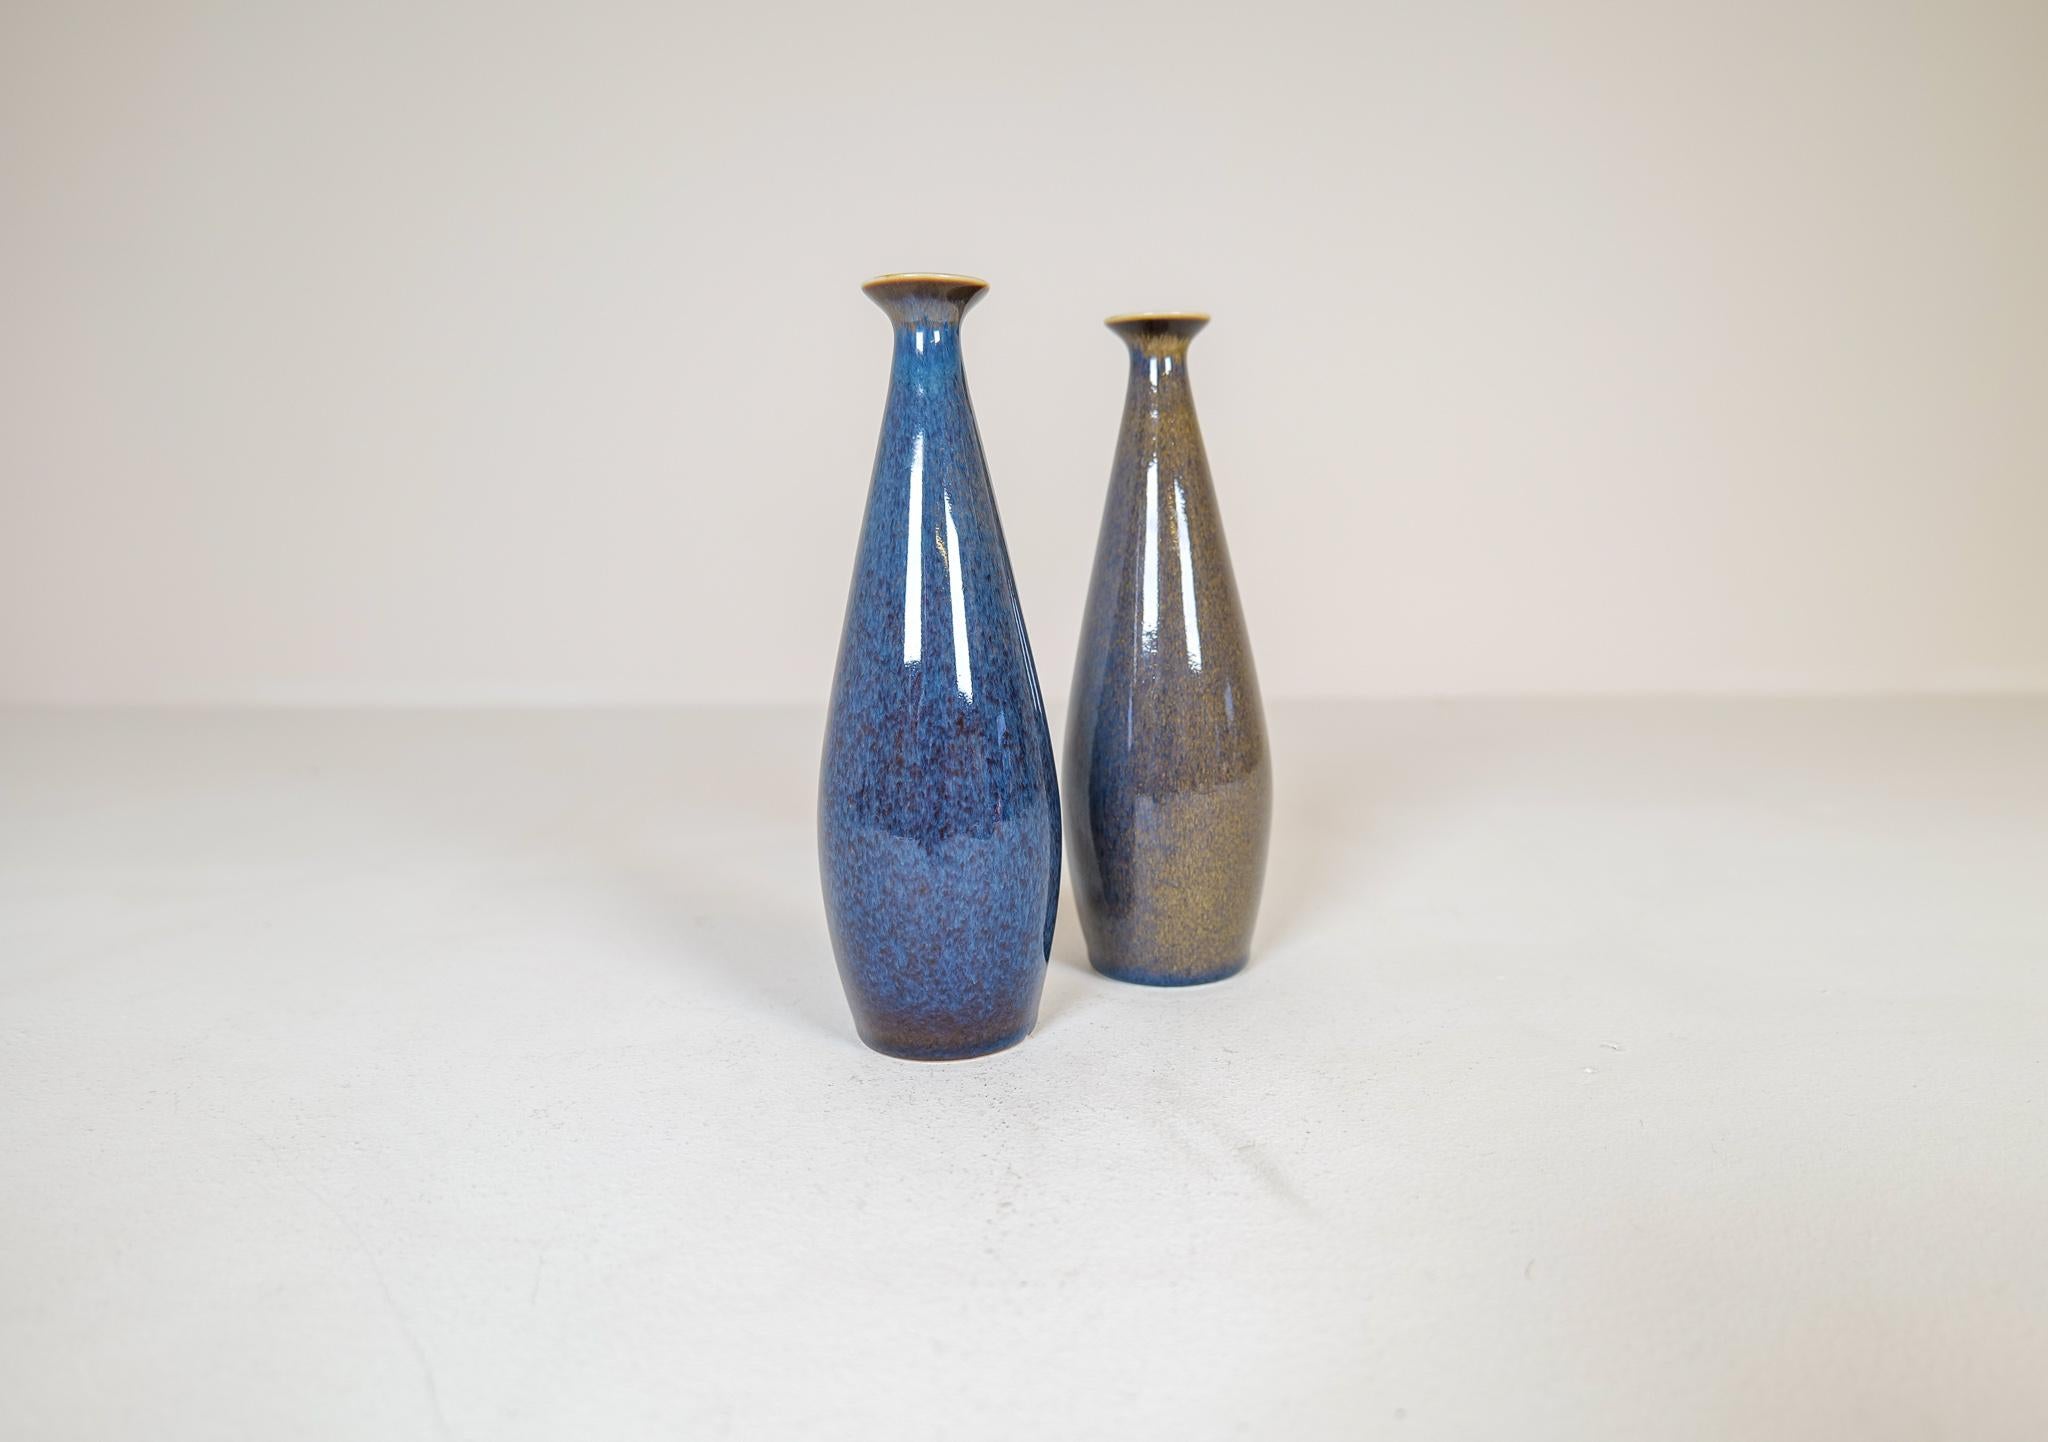 Diese Vasen von Rörstrand und dem Hersteller/Designer Carl Harry Stålhane sind ein großartiges Beispiel für die Qualität und das Design des Midcentury Modern, das in den 1950er und 1960er Jahren in Schweden hergestellt wurde. Die skulpturale Form